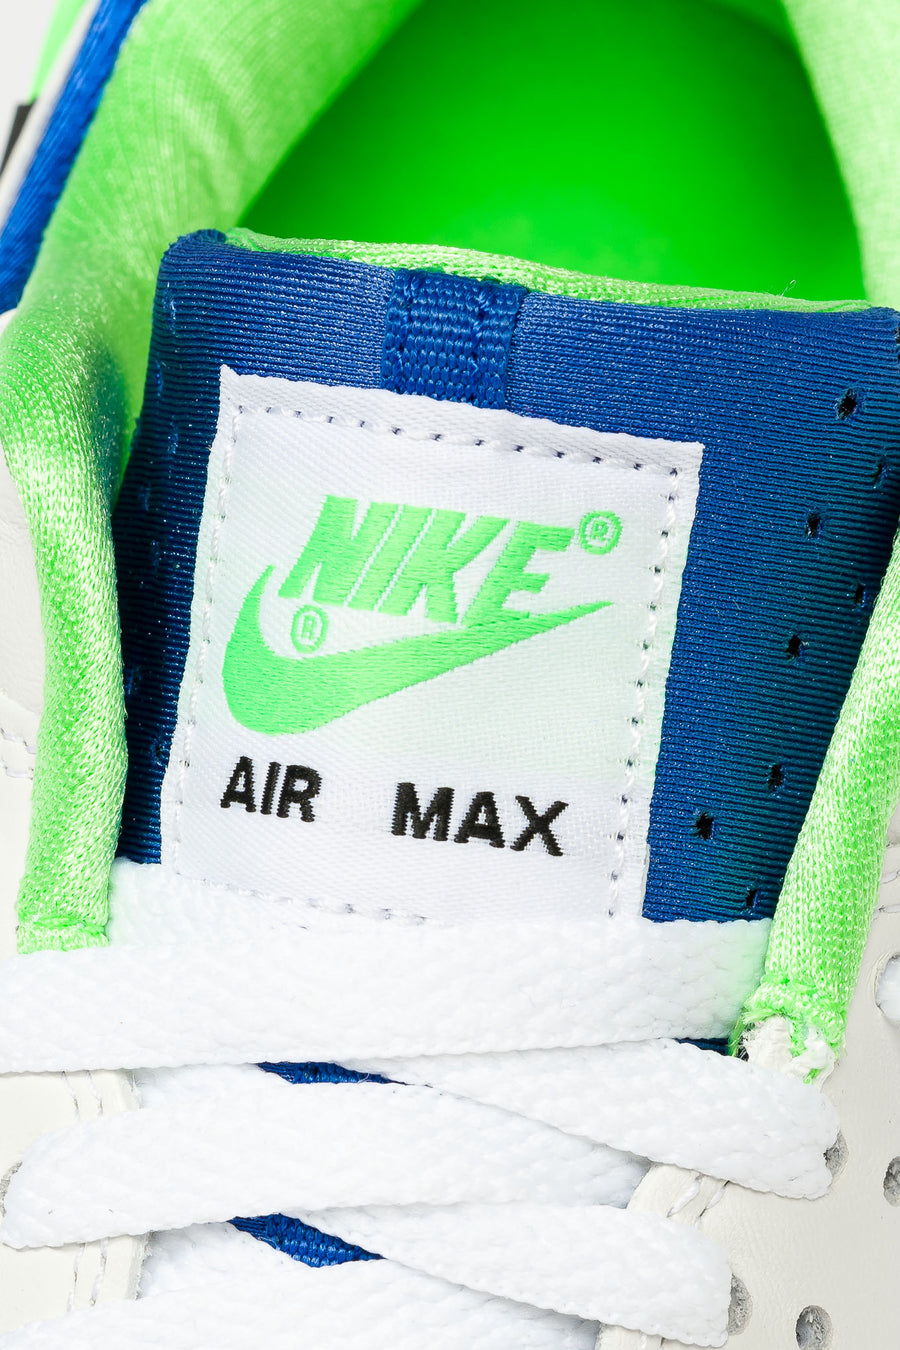 air max 1 scream green